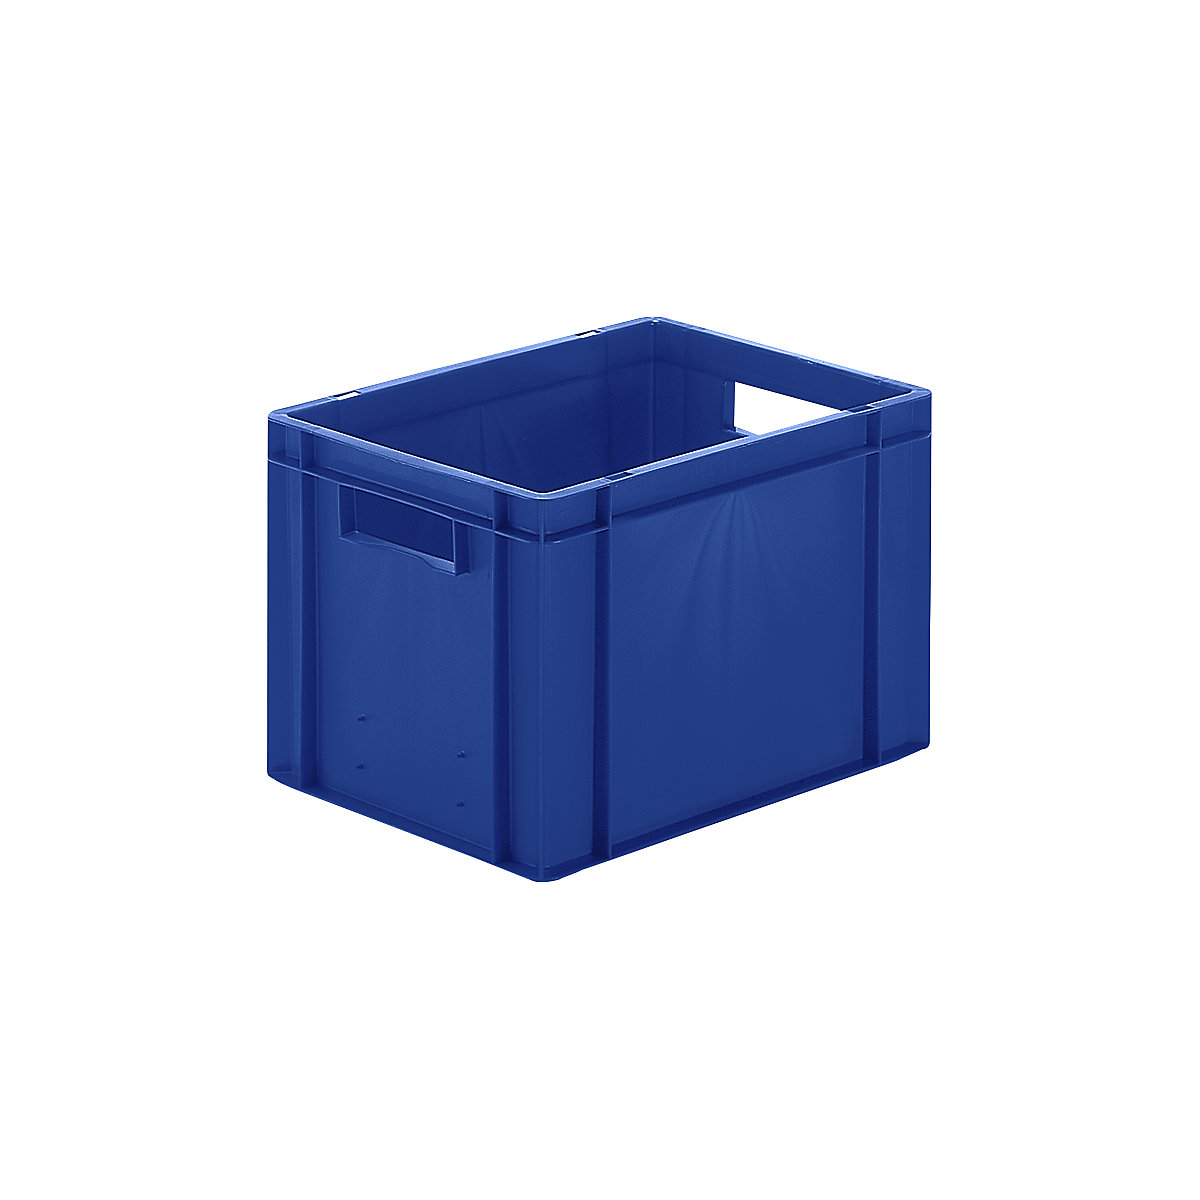 Euro-Format-Stapelbehälter, Wände und Boden geschlossen, LxBxH 400 x 300 x 270 mm, blau, VE 5 Stk-5